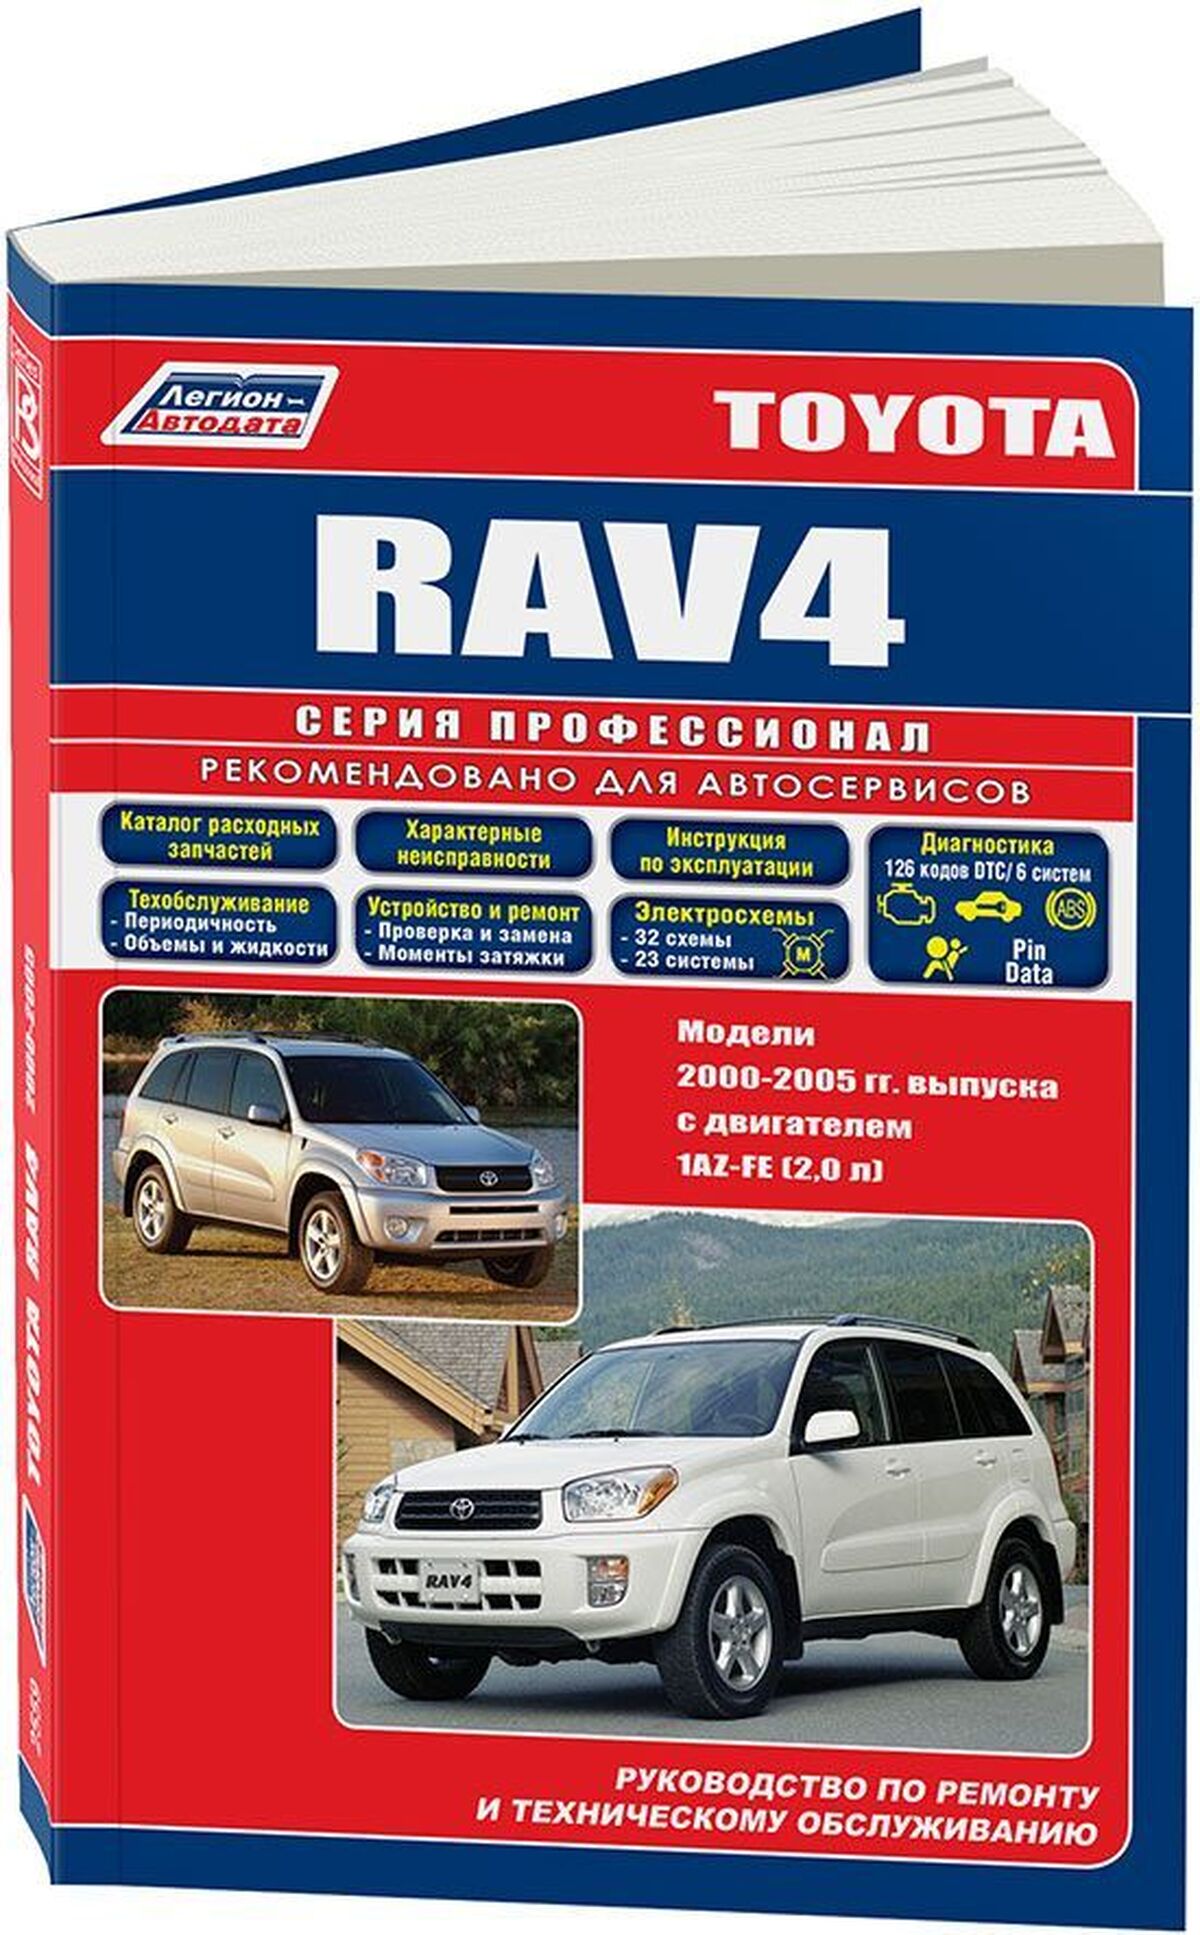 Книга: TOYOTA RAV 4 левый руль (б) 2000-2005 г.в., рем., экспл., то | Легион-Aвтодата